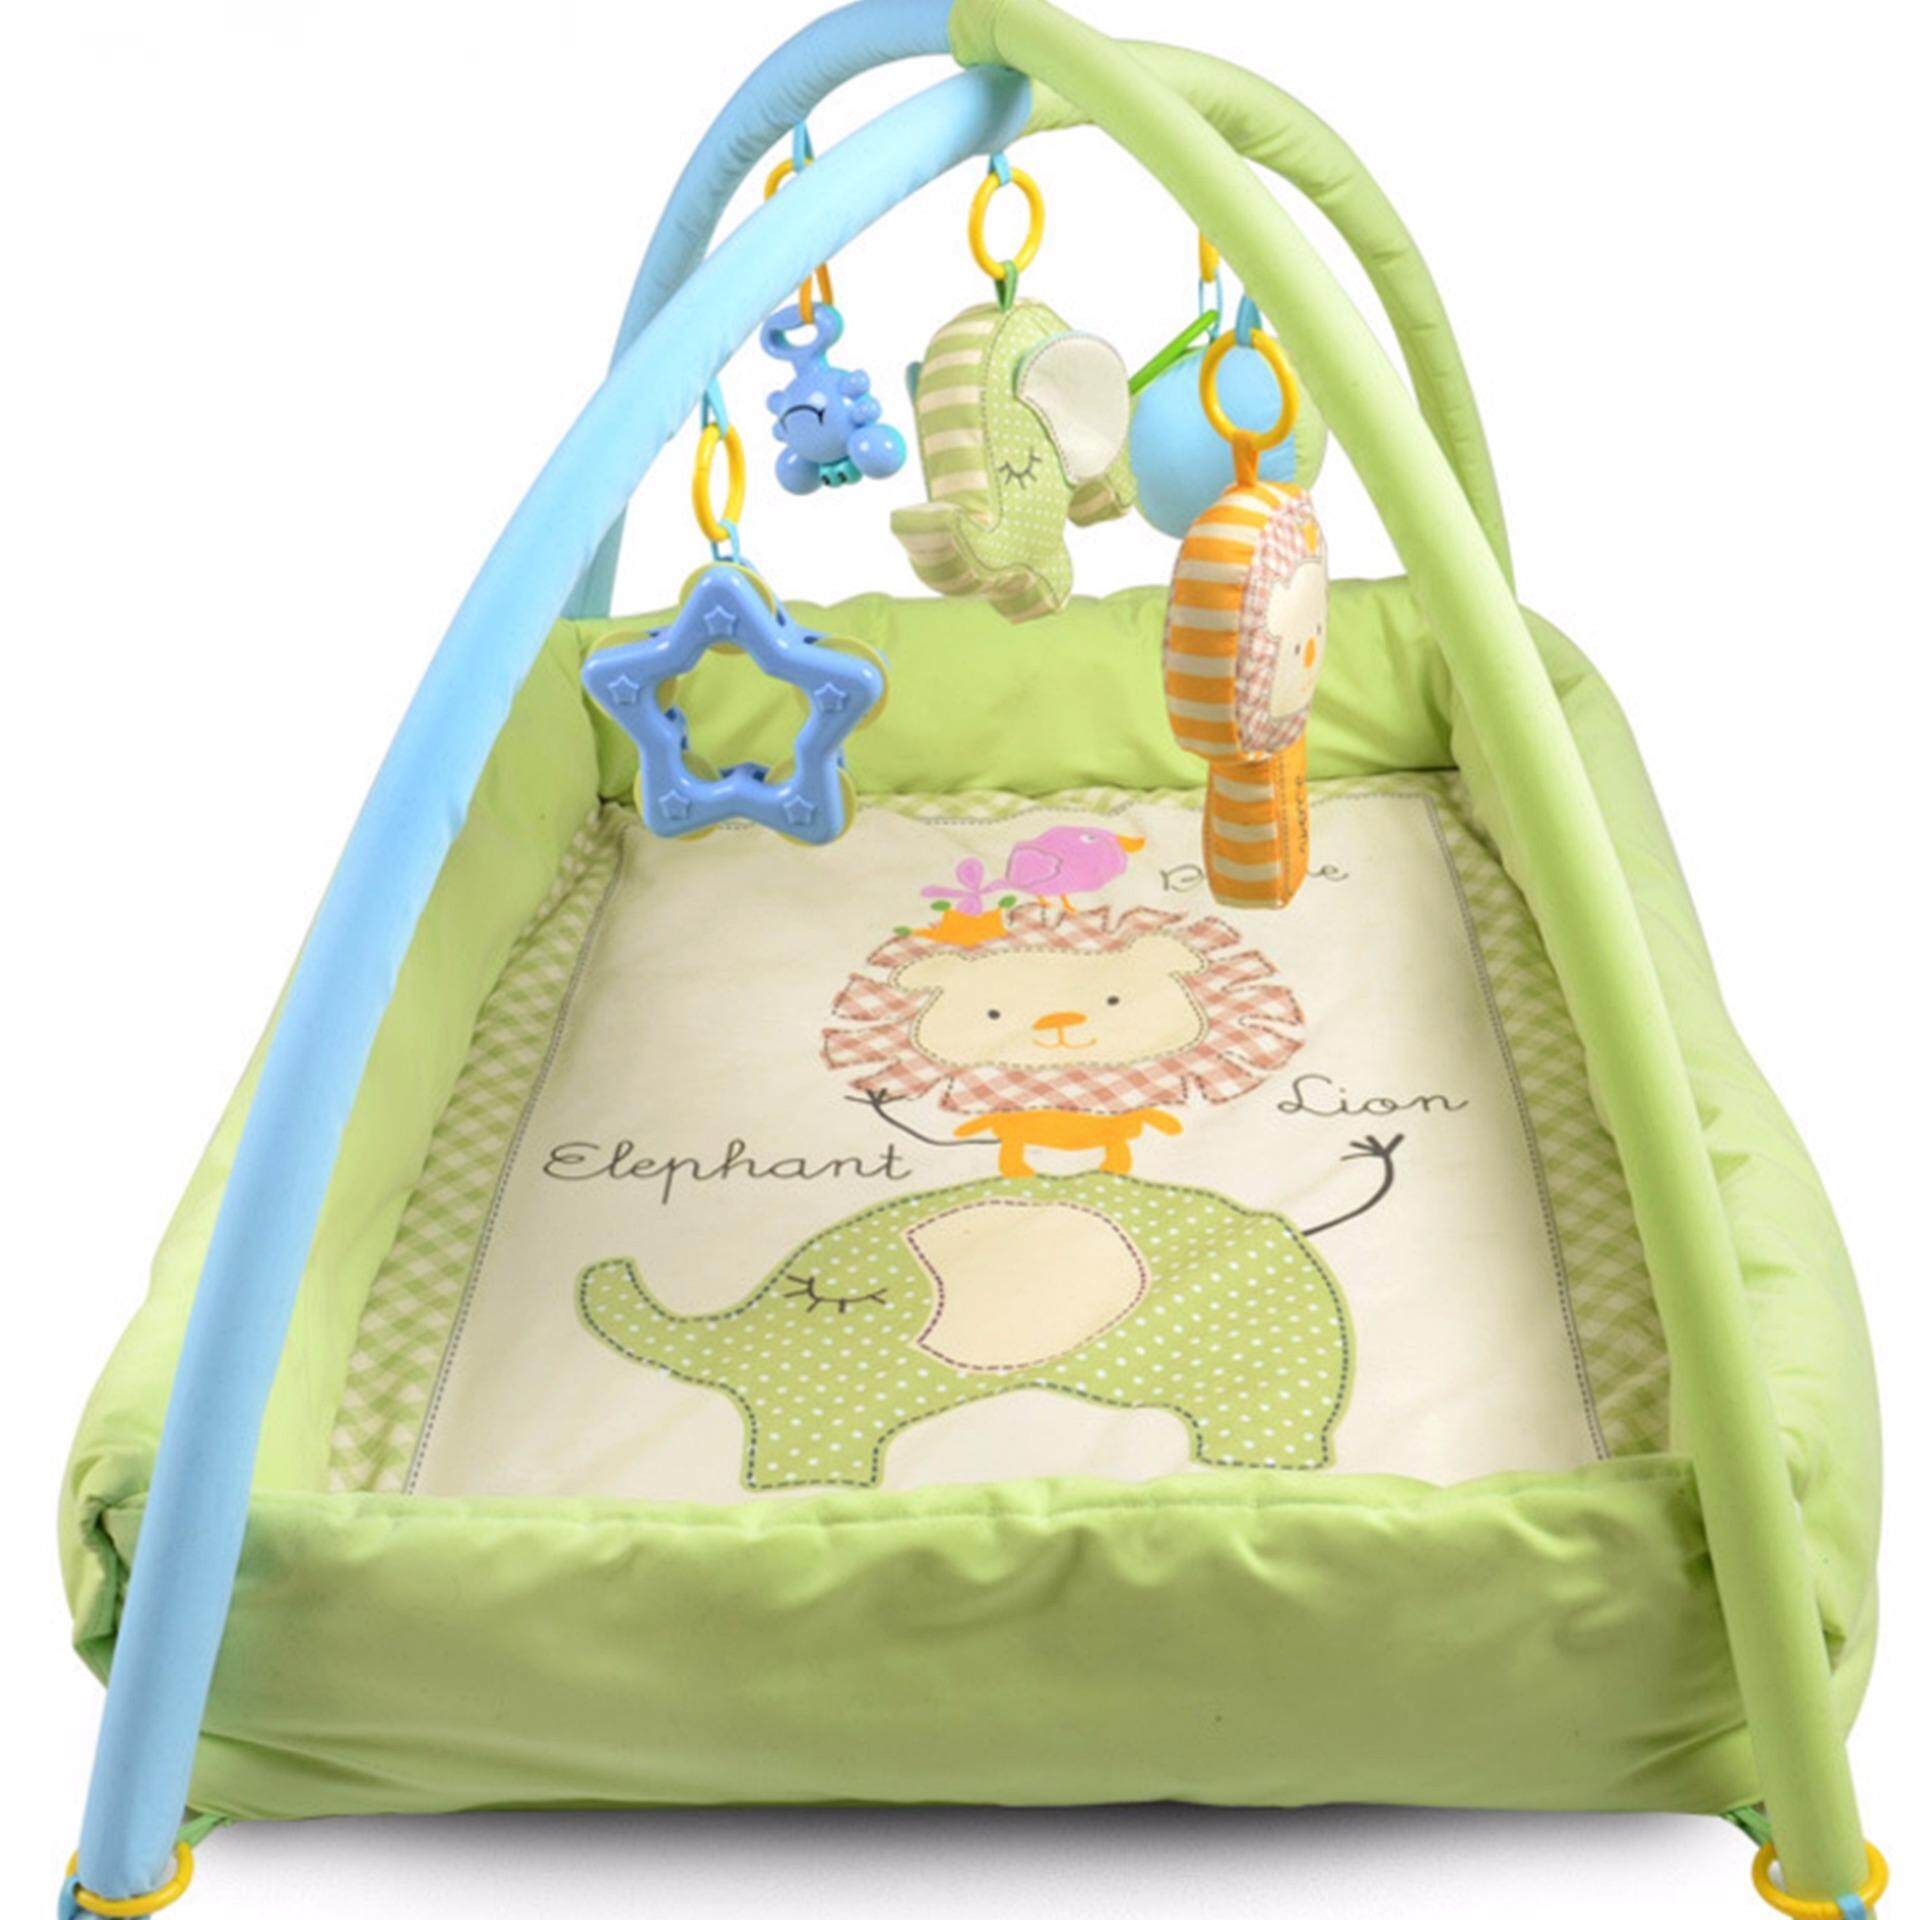 โปรโมชั่น เพลยิม ที่นอนเด็ก เปลเด็ก ของเล่นเสริมพัฒนาการ ที่นอนเด็กแรกเกิด ที่นอนเด็กอ่อน เบาะนอนทารก สีเขียว